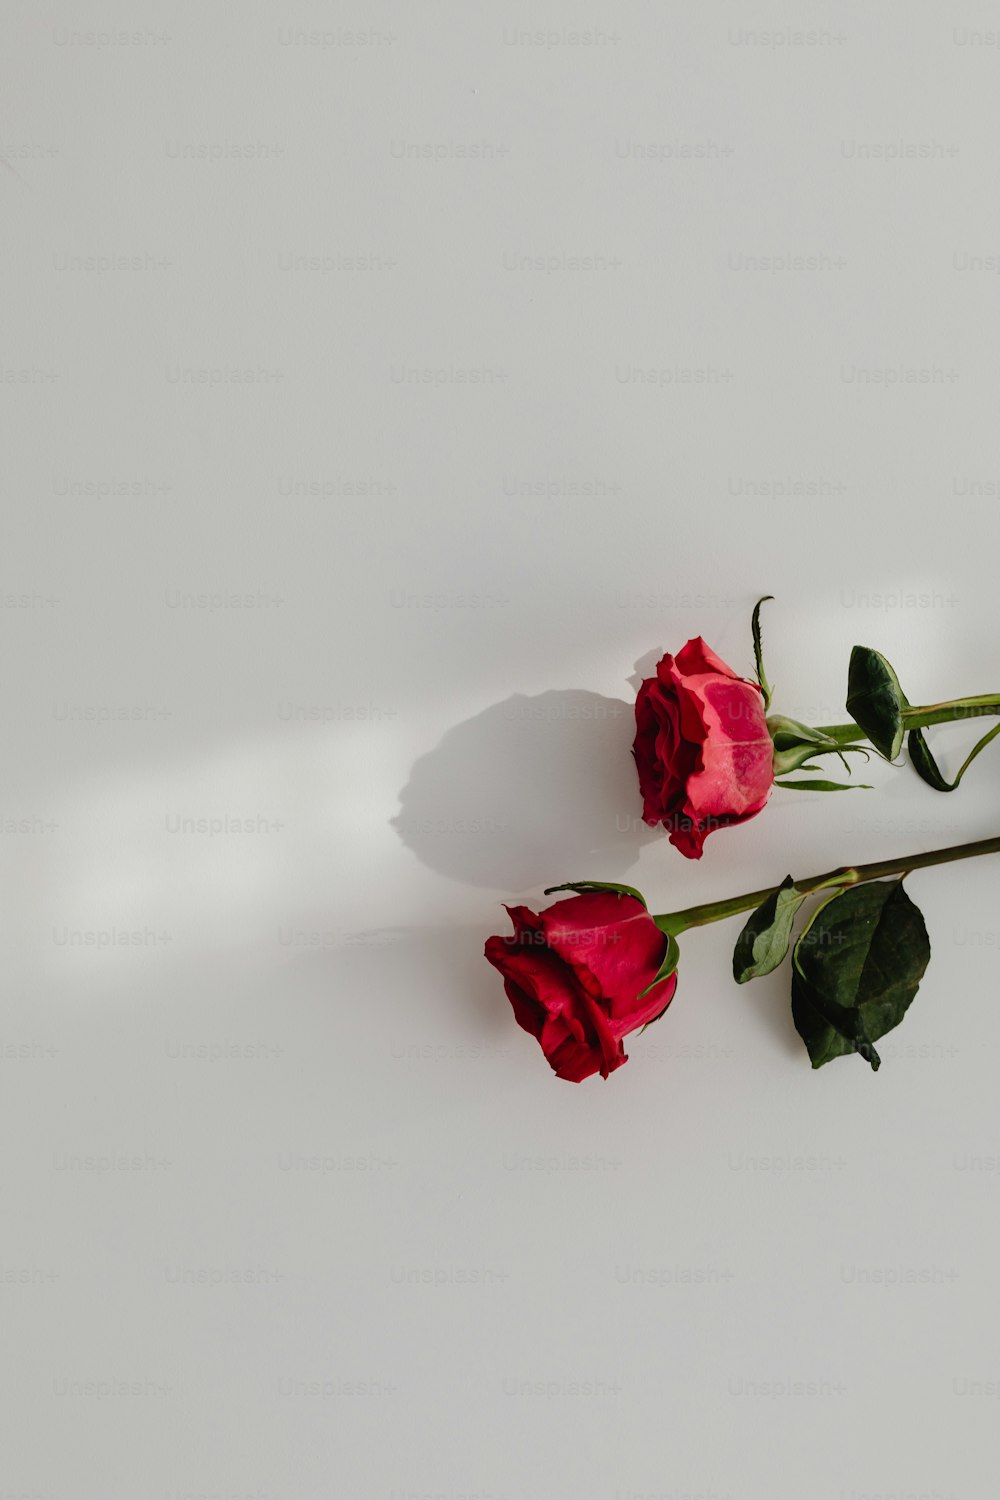 deux roses rouges assises sur une table blanche